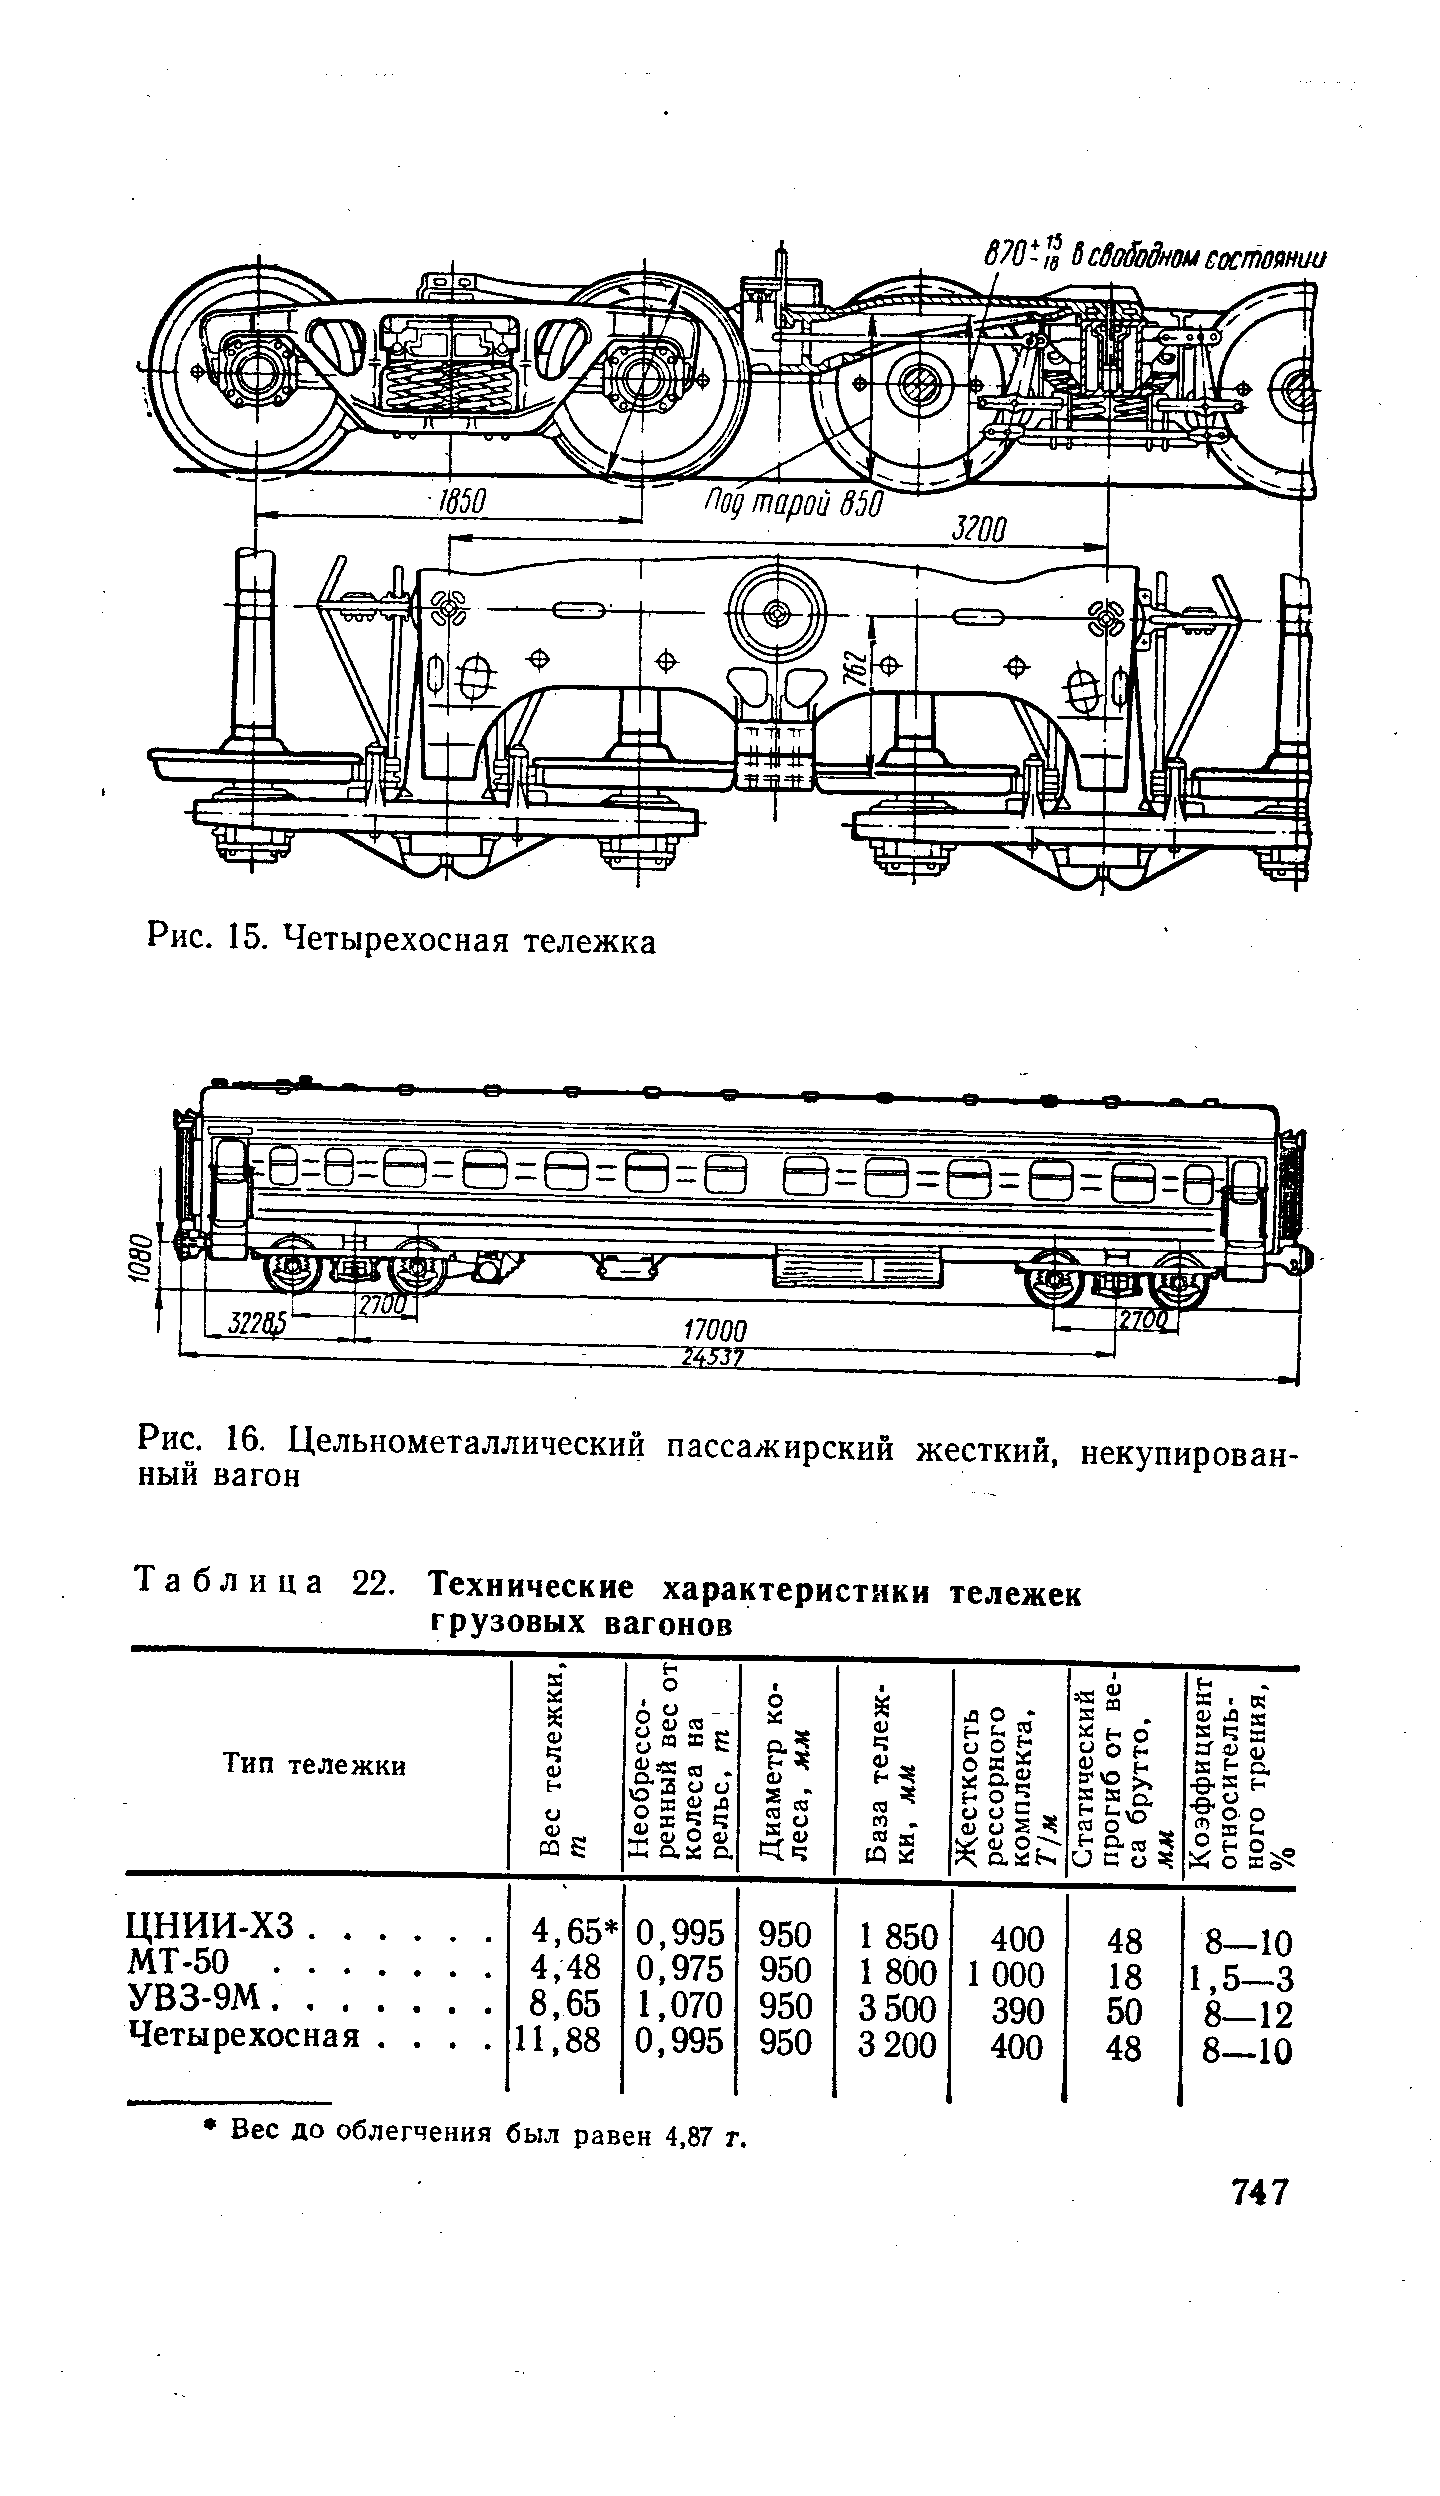 Таблица 22. Технические характеристики тележек грузовых вагонов
